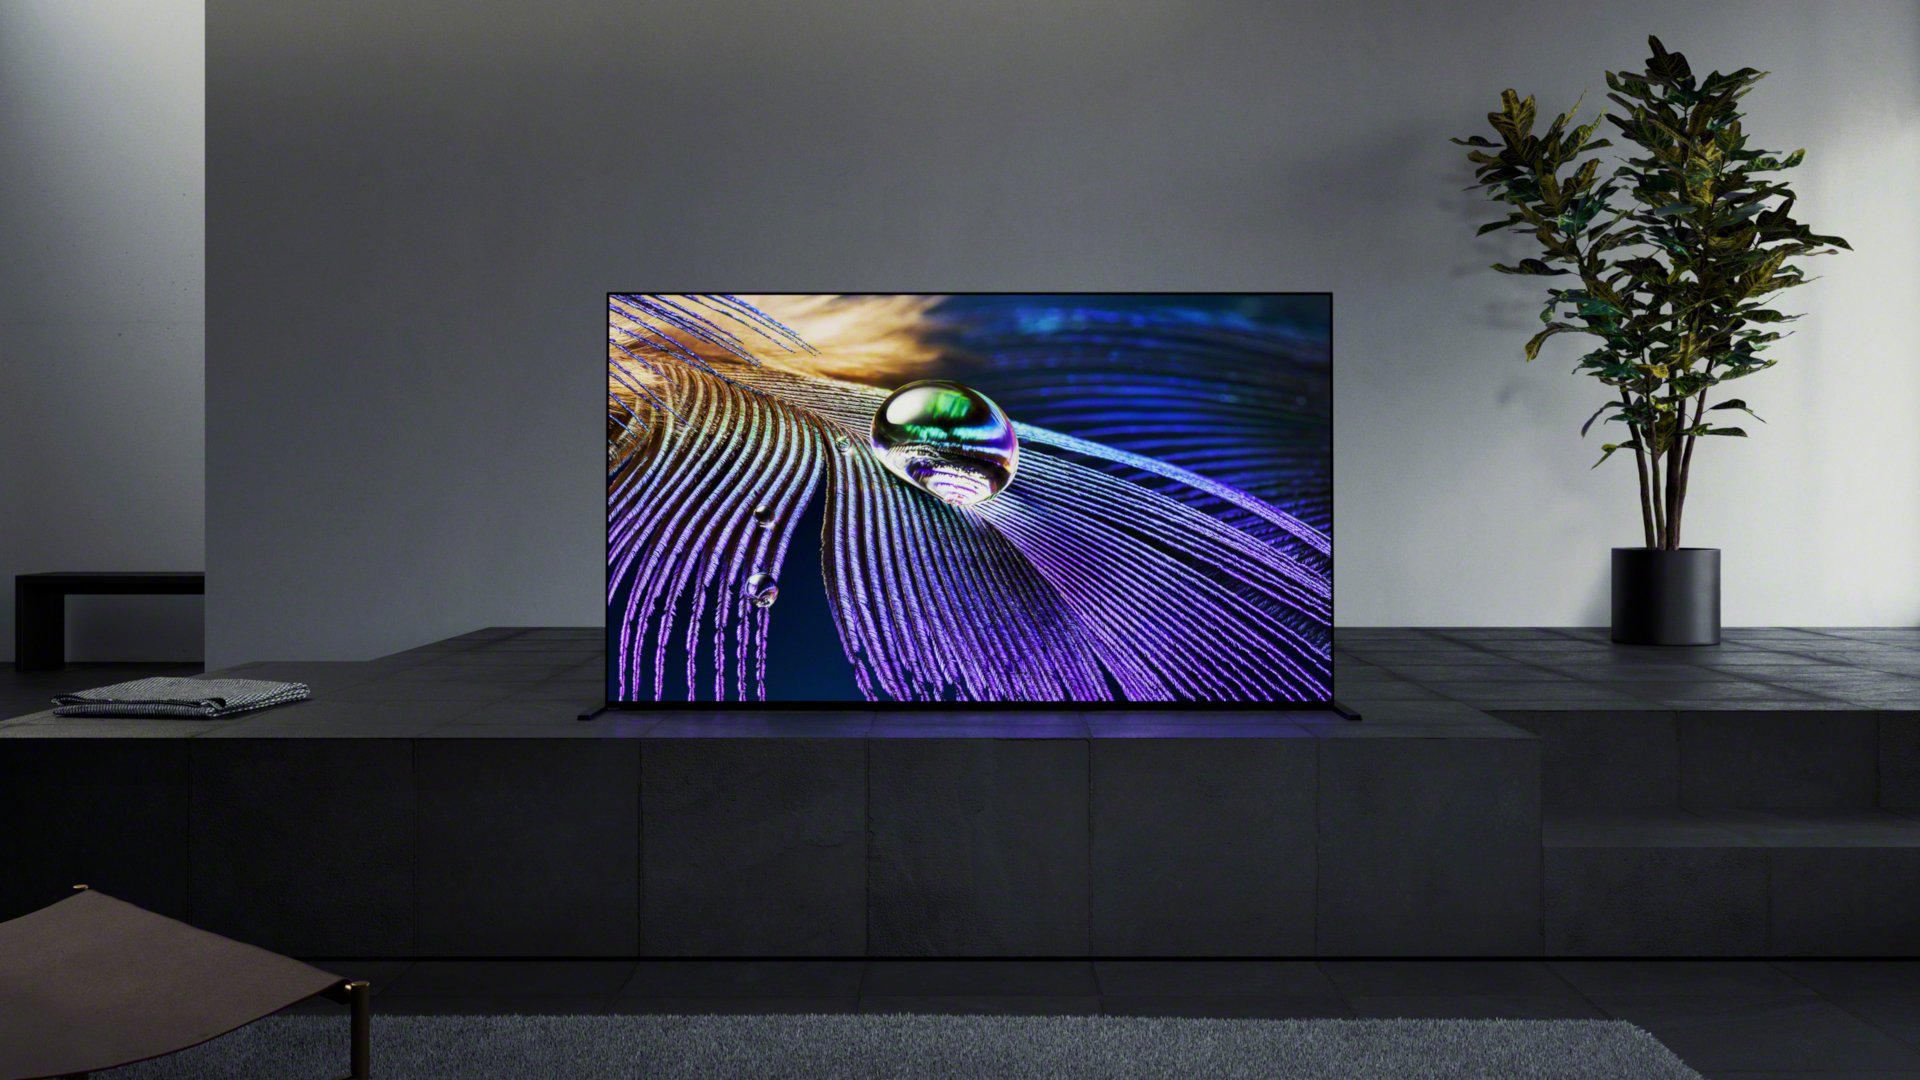 Telewizor OLED Sony A90J w ciemnoszarym salonie, przedstawiający zbliżenie przyrody na ekranie z fioletową powierzchnią i kroplą wody.